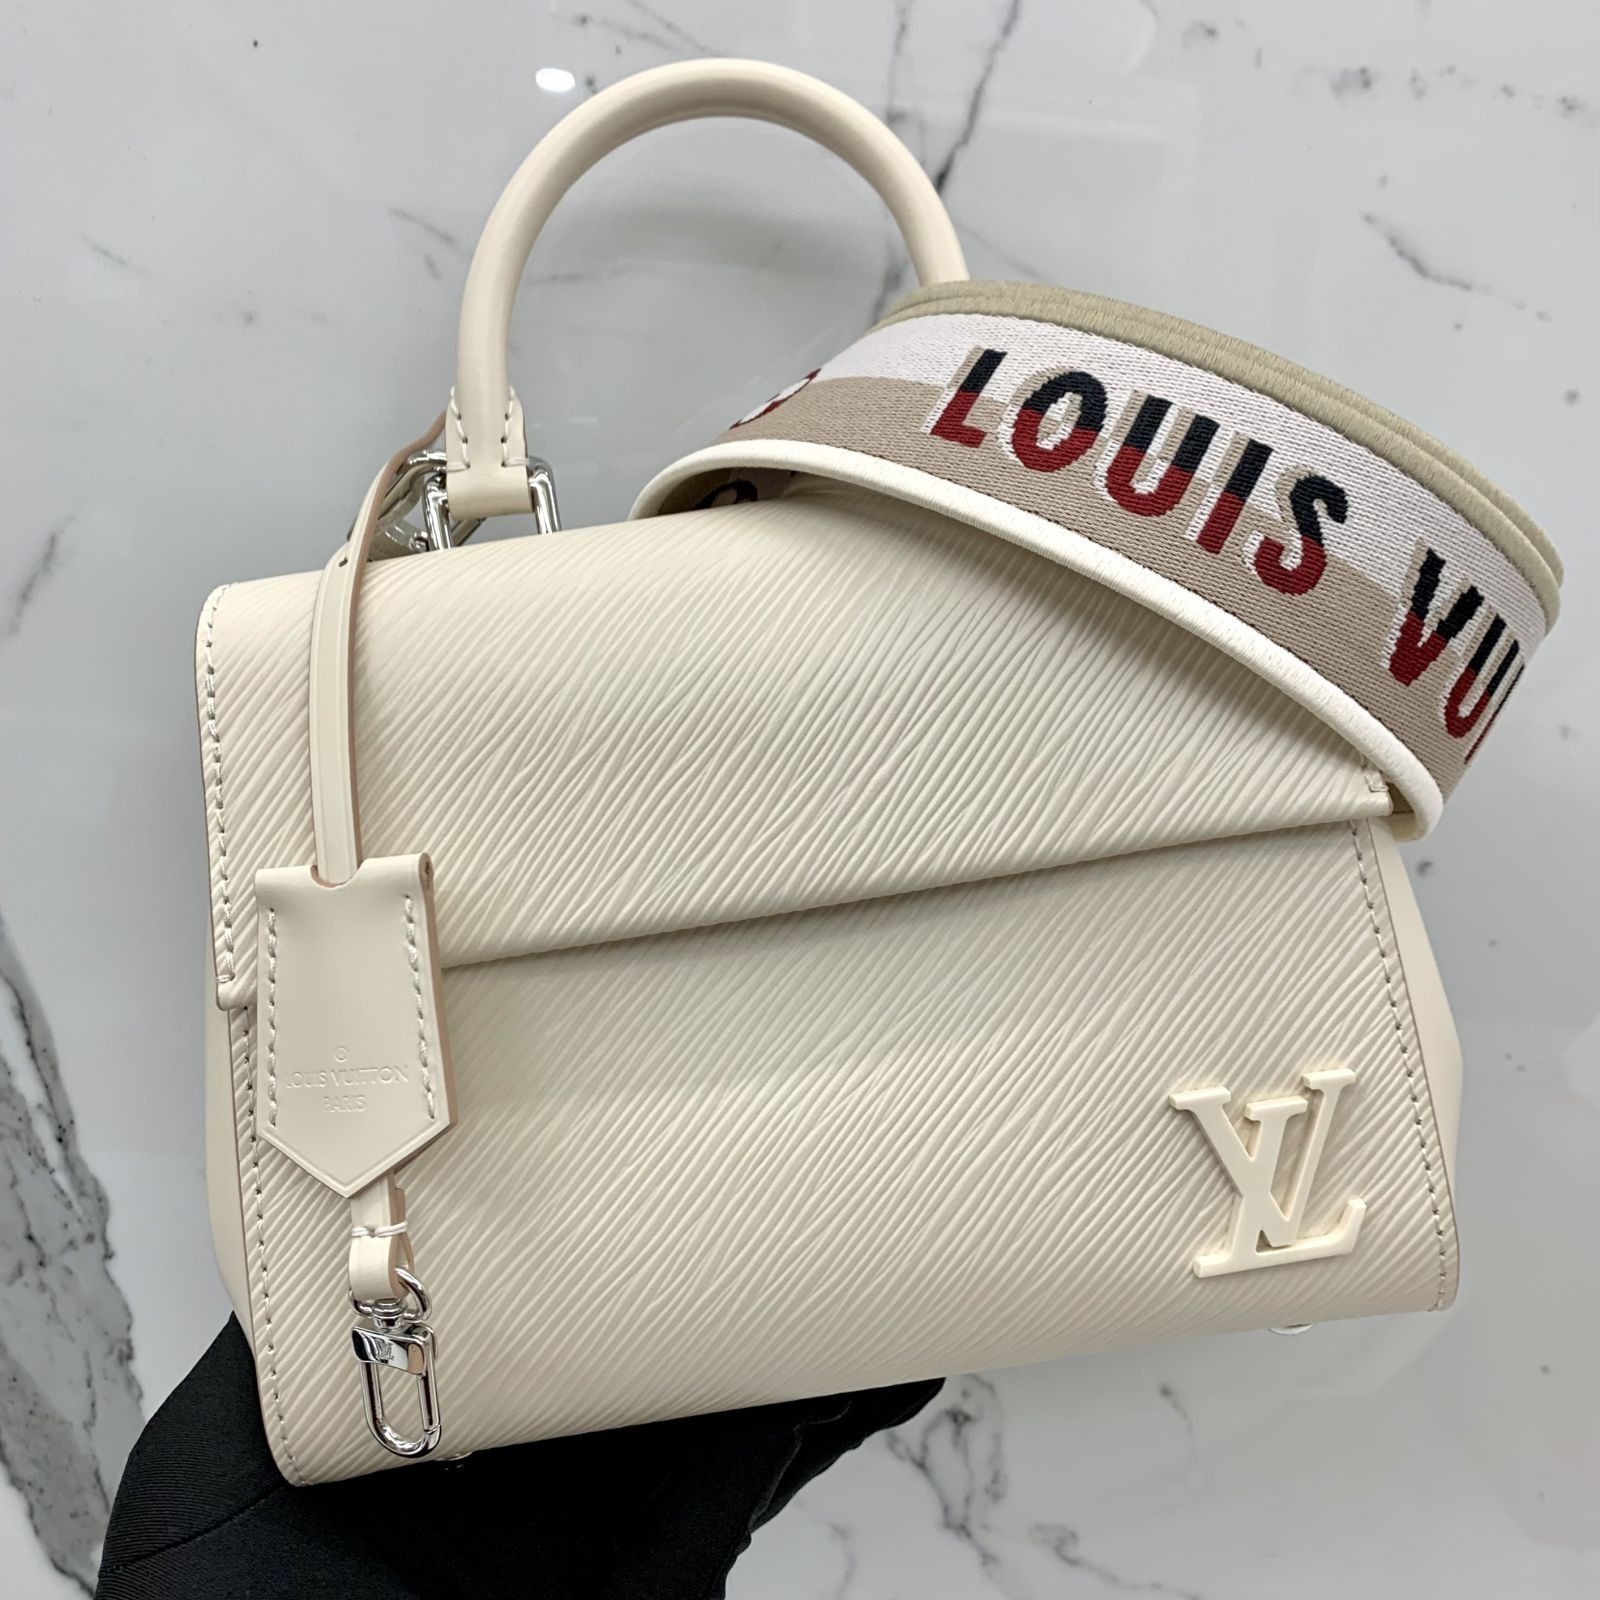 Shop Louis Vuitton Cluny mini (M58931) by LesAiles